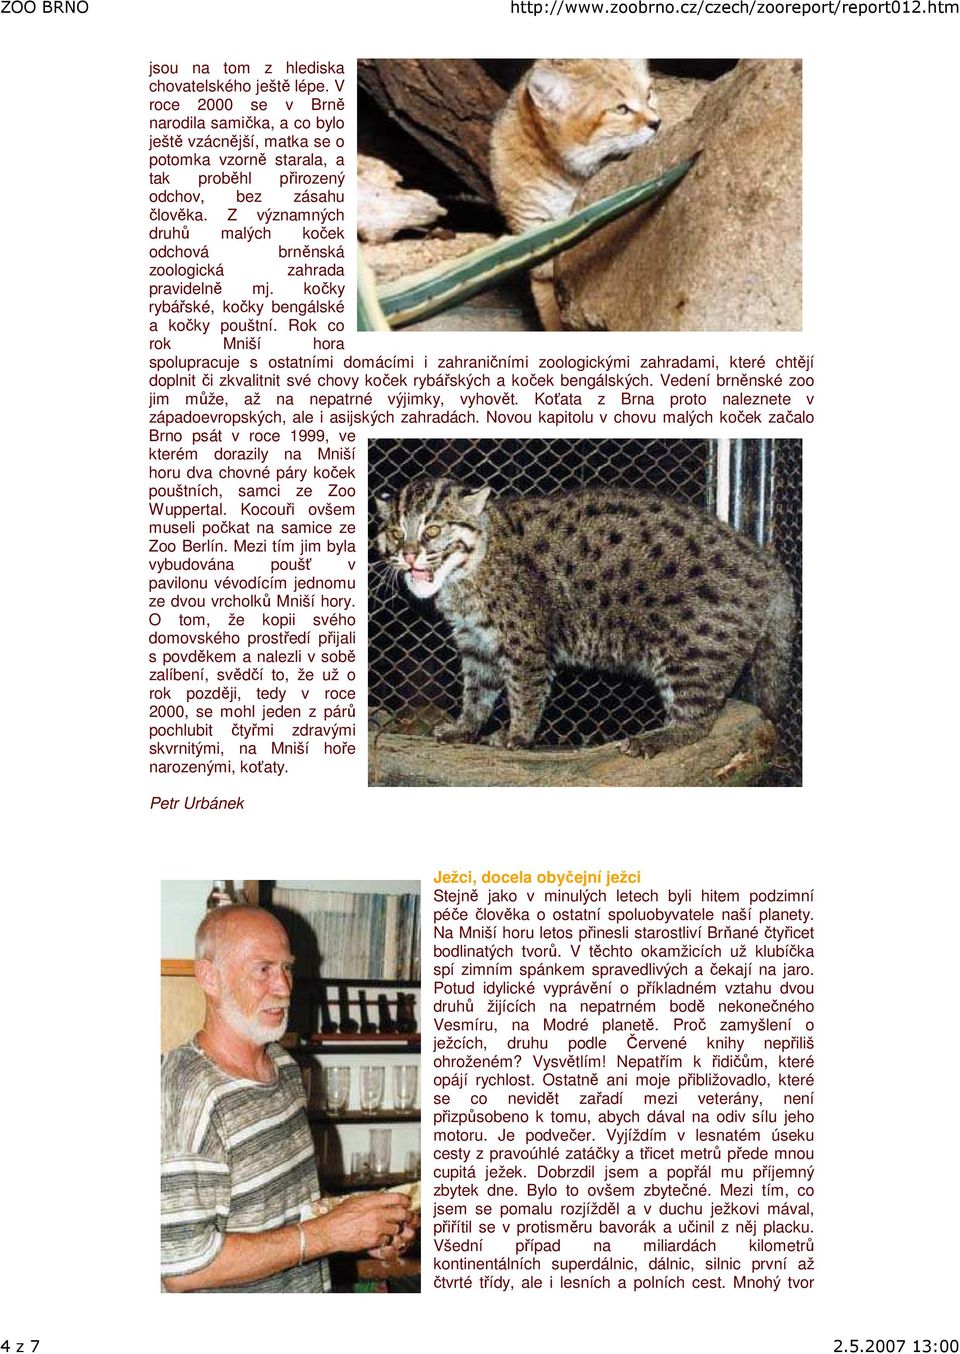 Z významných druhů malých koček odchová brněnská zoologická zahrada pravidelně mj. kočky rybářské, kočky bengálské a kočky pouštní.